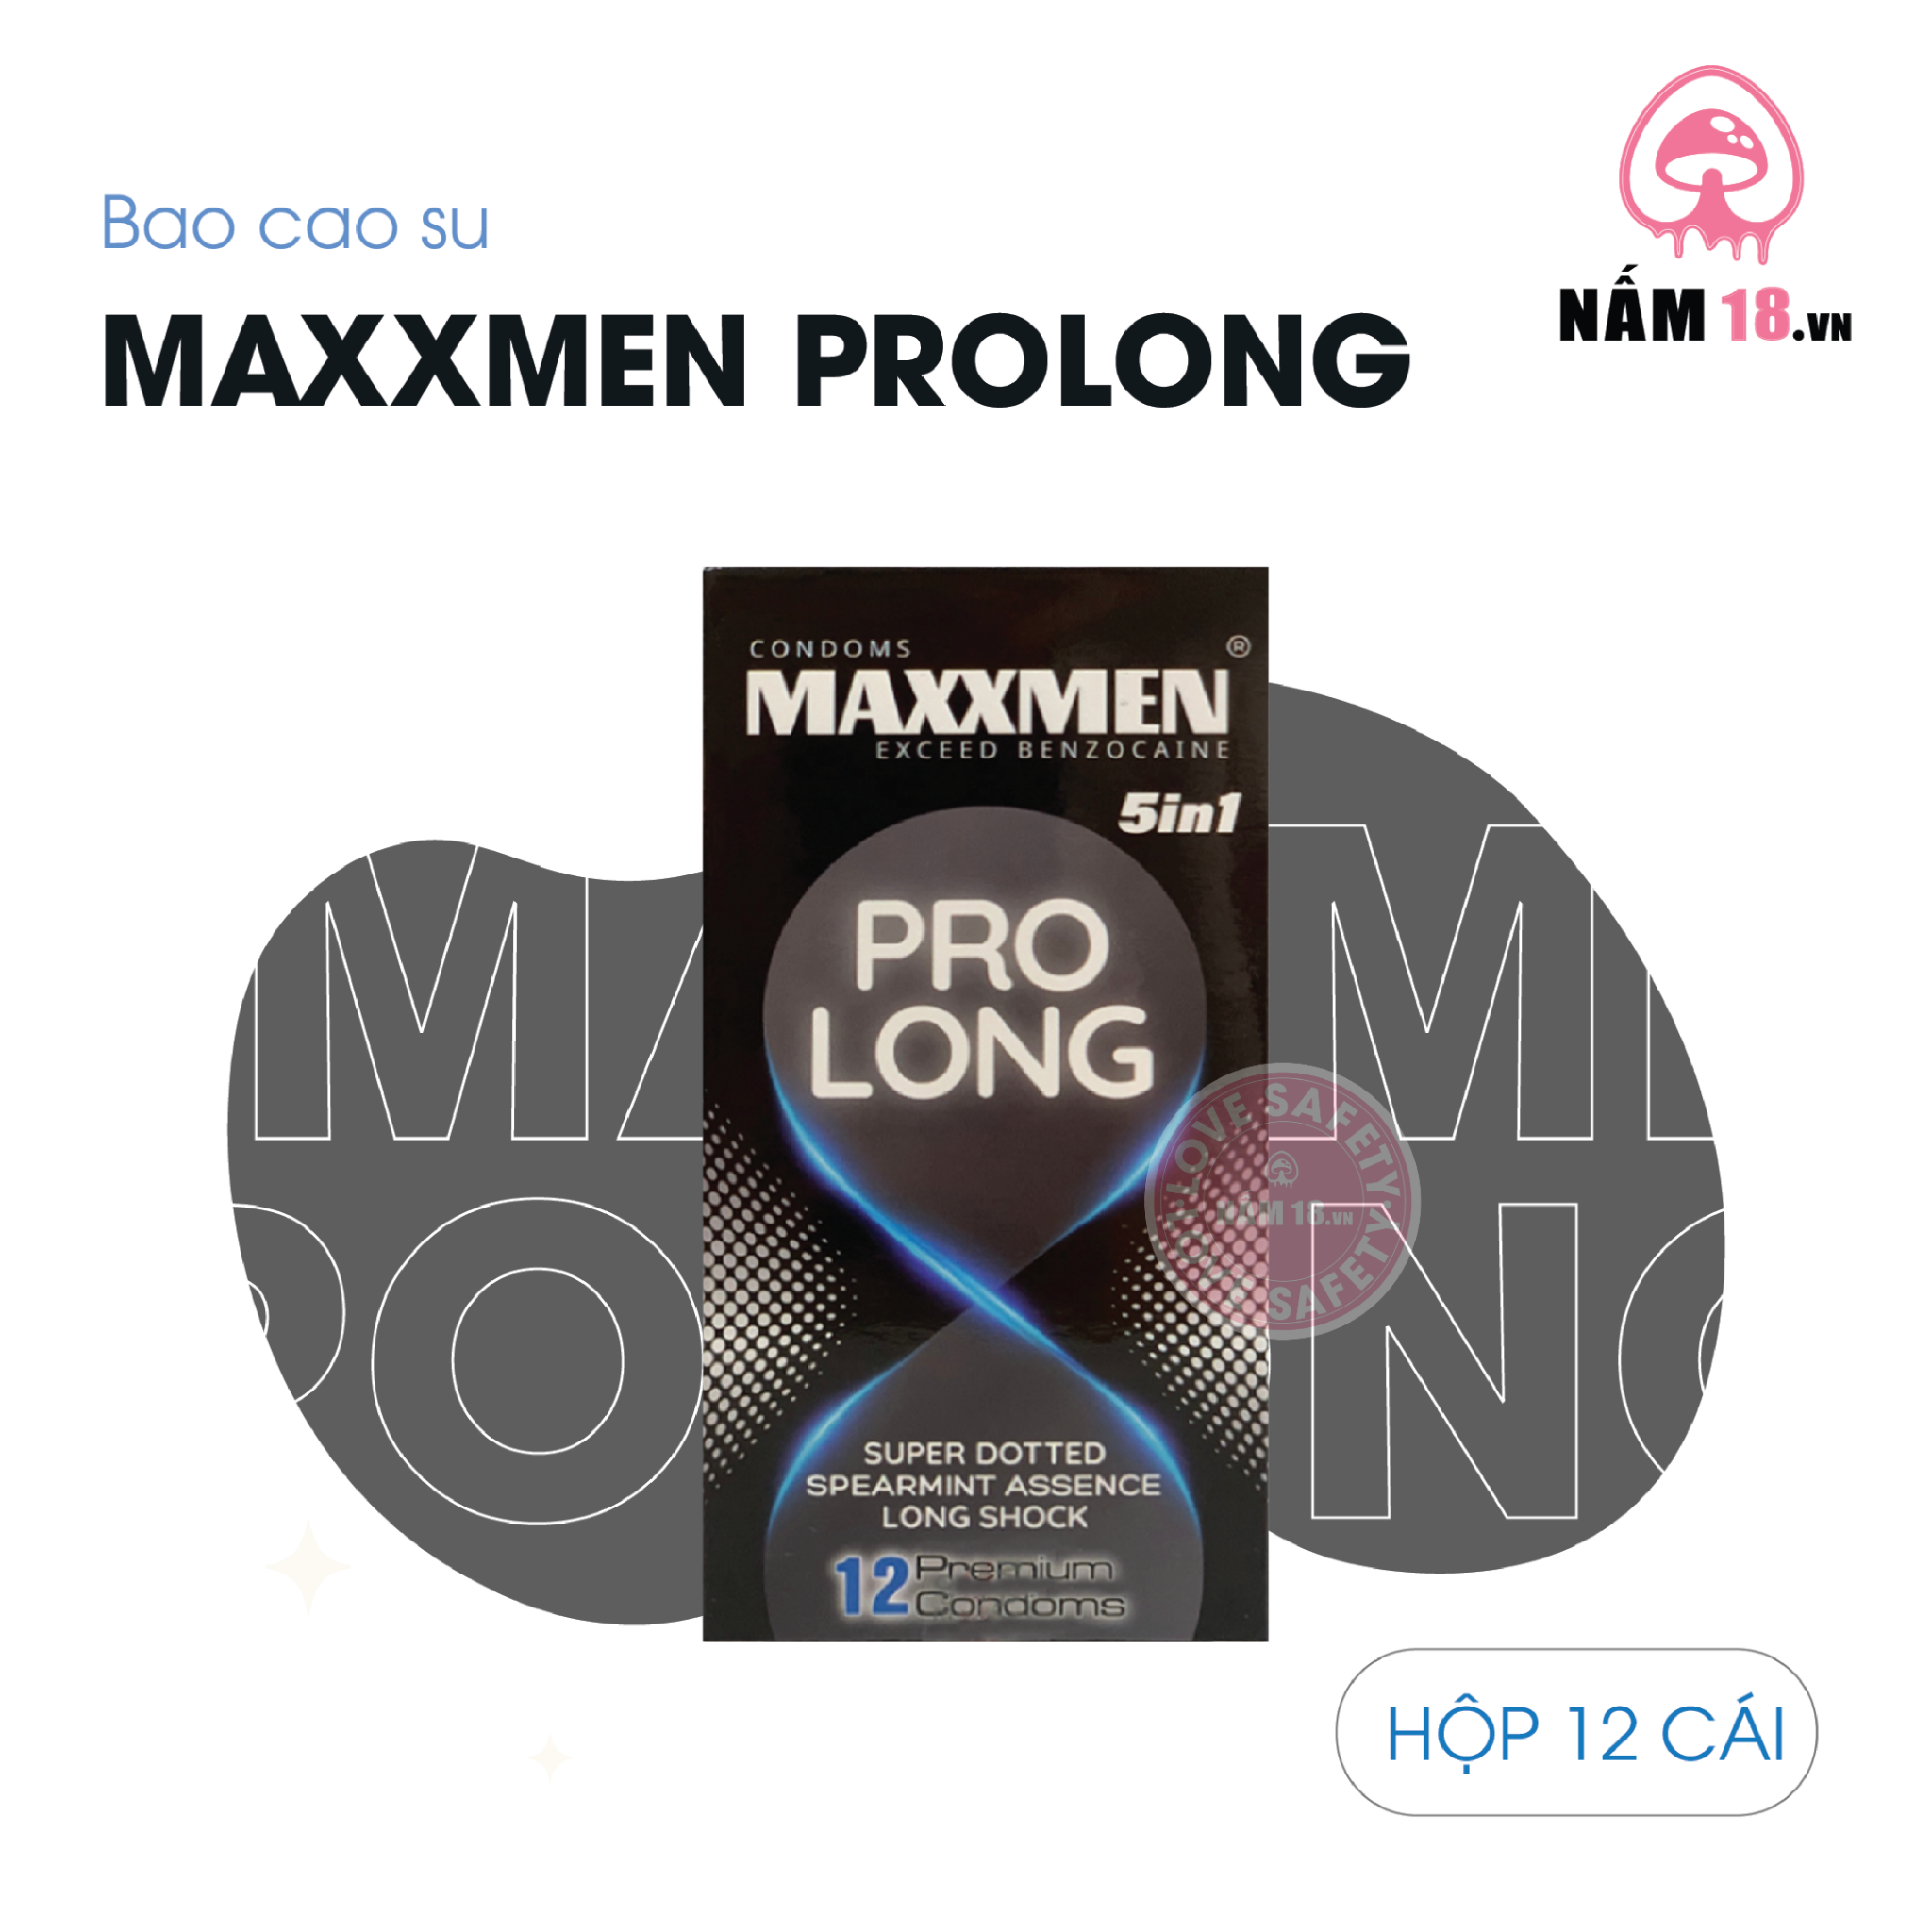  Bao Cao Su Kéo Dài Thời Gian Maxxmen 5in1 ProLong - Hộp 12 Cái 